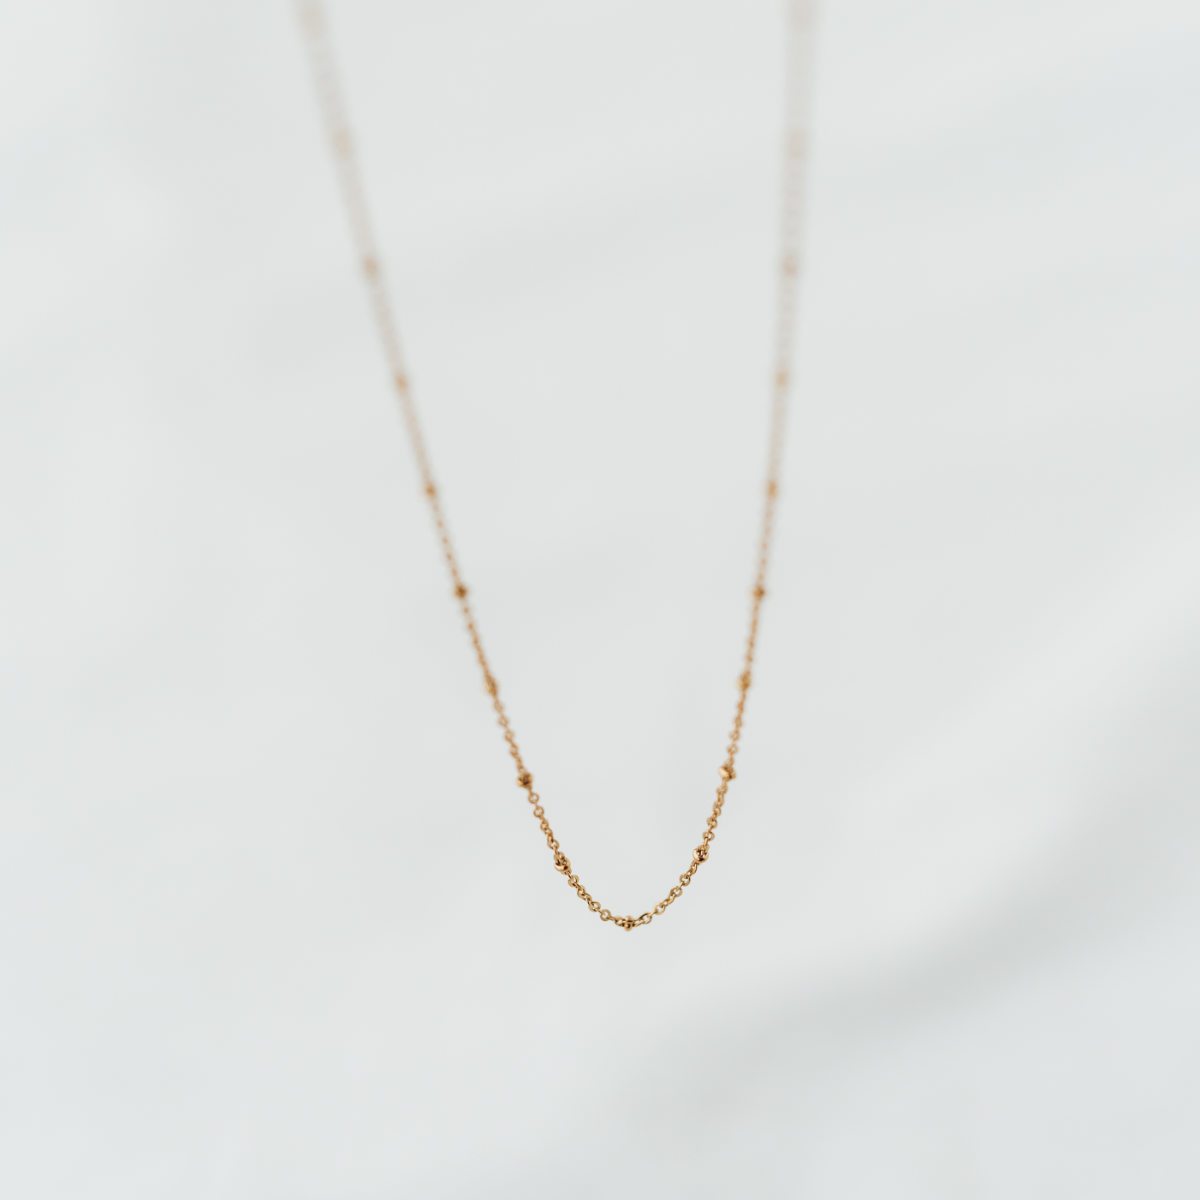 Allrounder Necklace | Accessoires für €14.99 von So Loved Manufacture